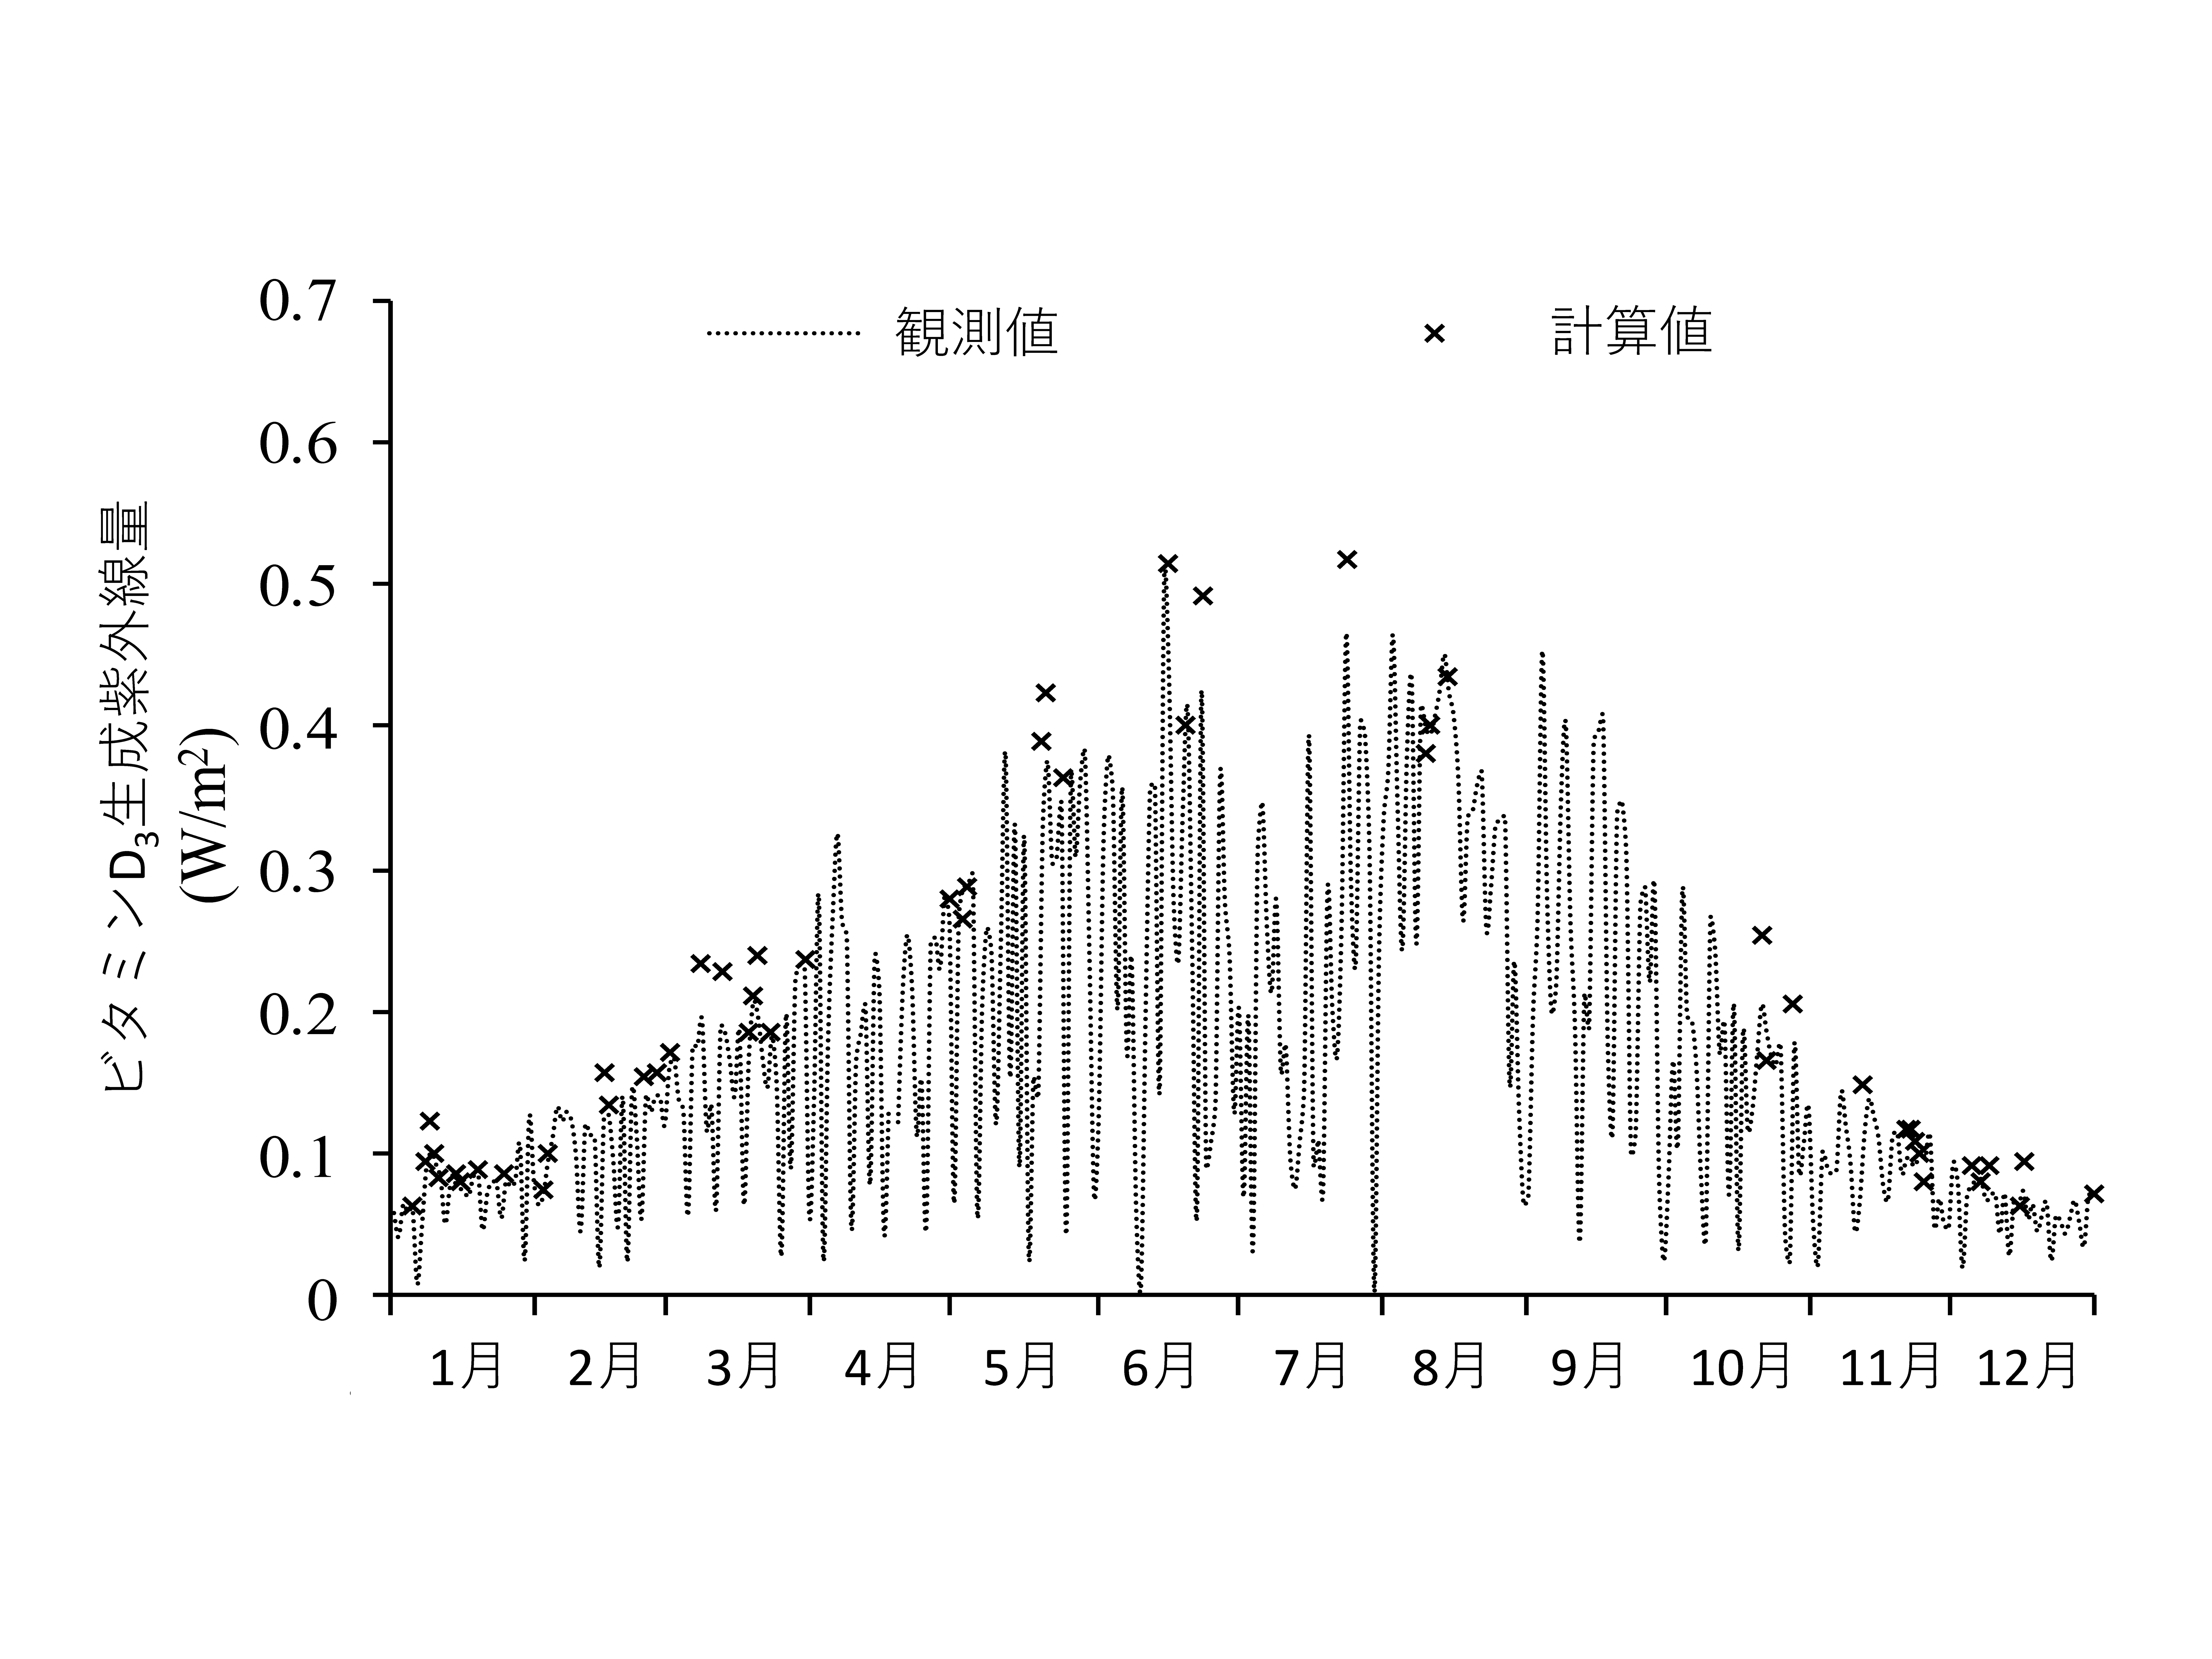 2007年つくば市の12時におけるビタミンD生成紫外線量の観測値と計算値の比較計算は快晴日についてのみ行っている。の図